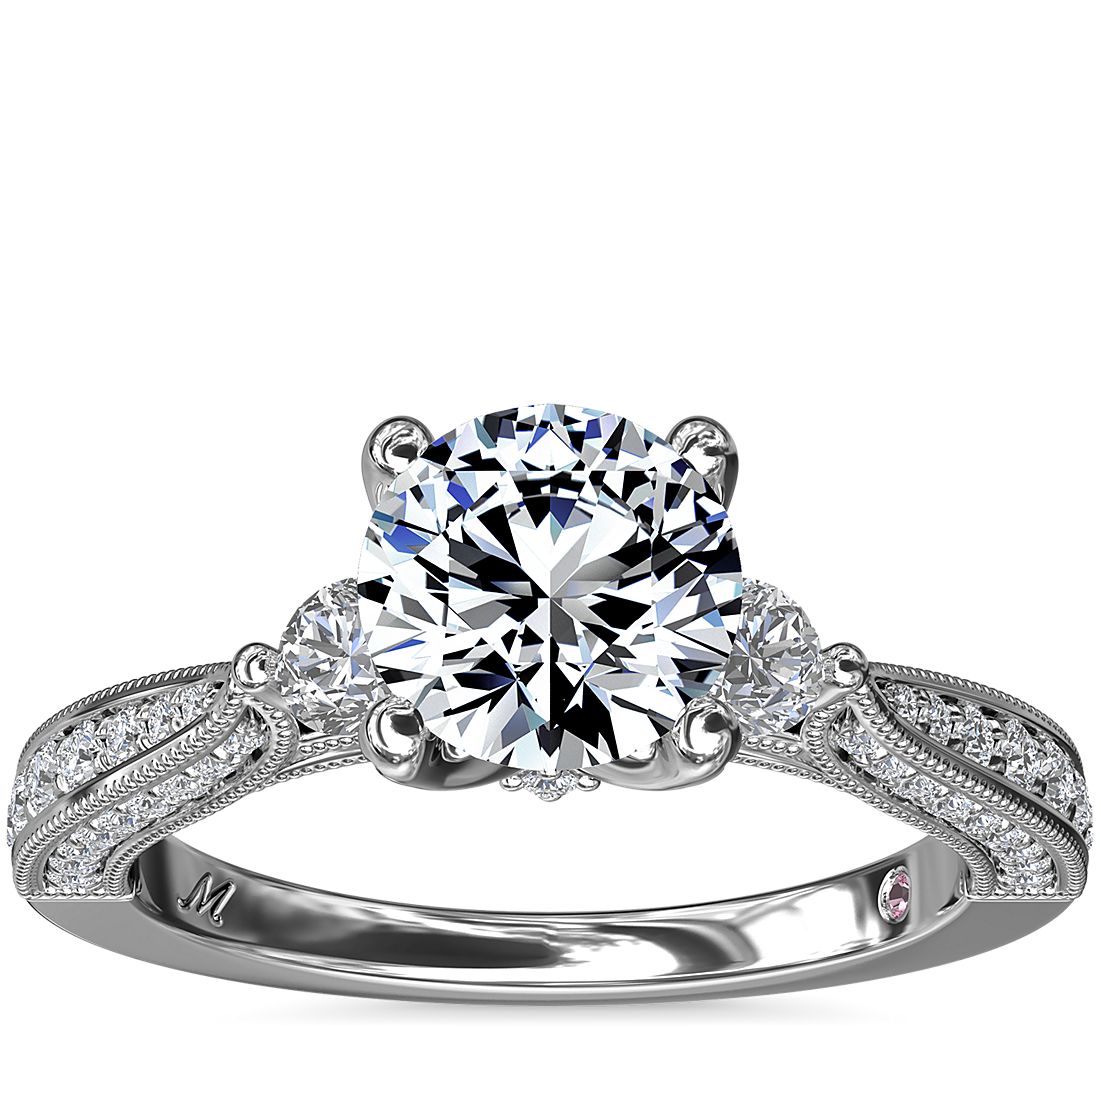 Blue Nile Monique Lhuillier Realeza Three-Stone Milgrain 1.34-Carat Round-Cut Diamond Ring in Platinum